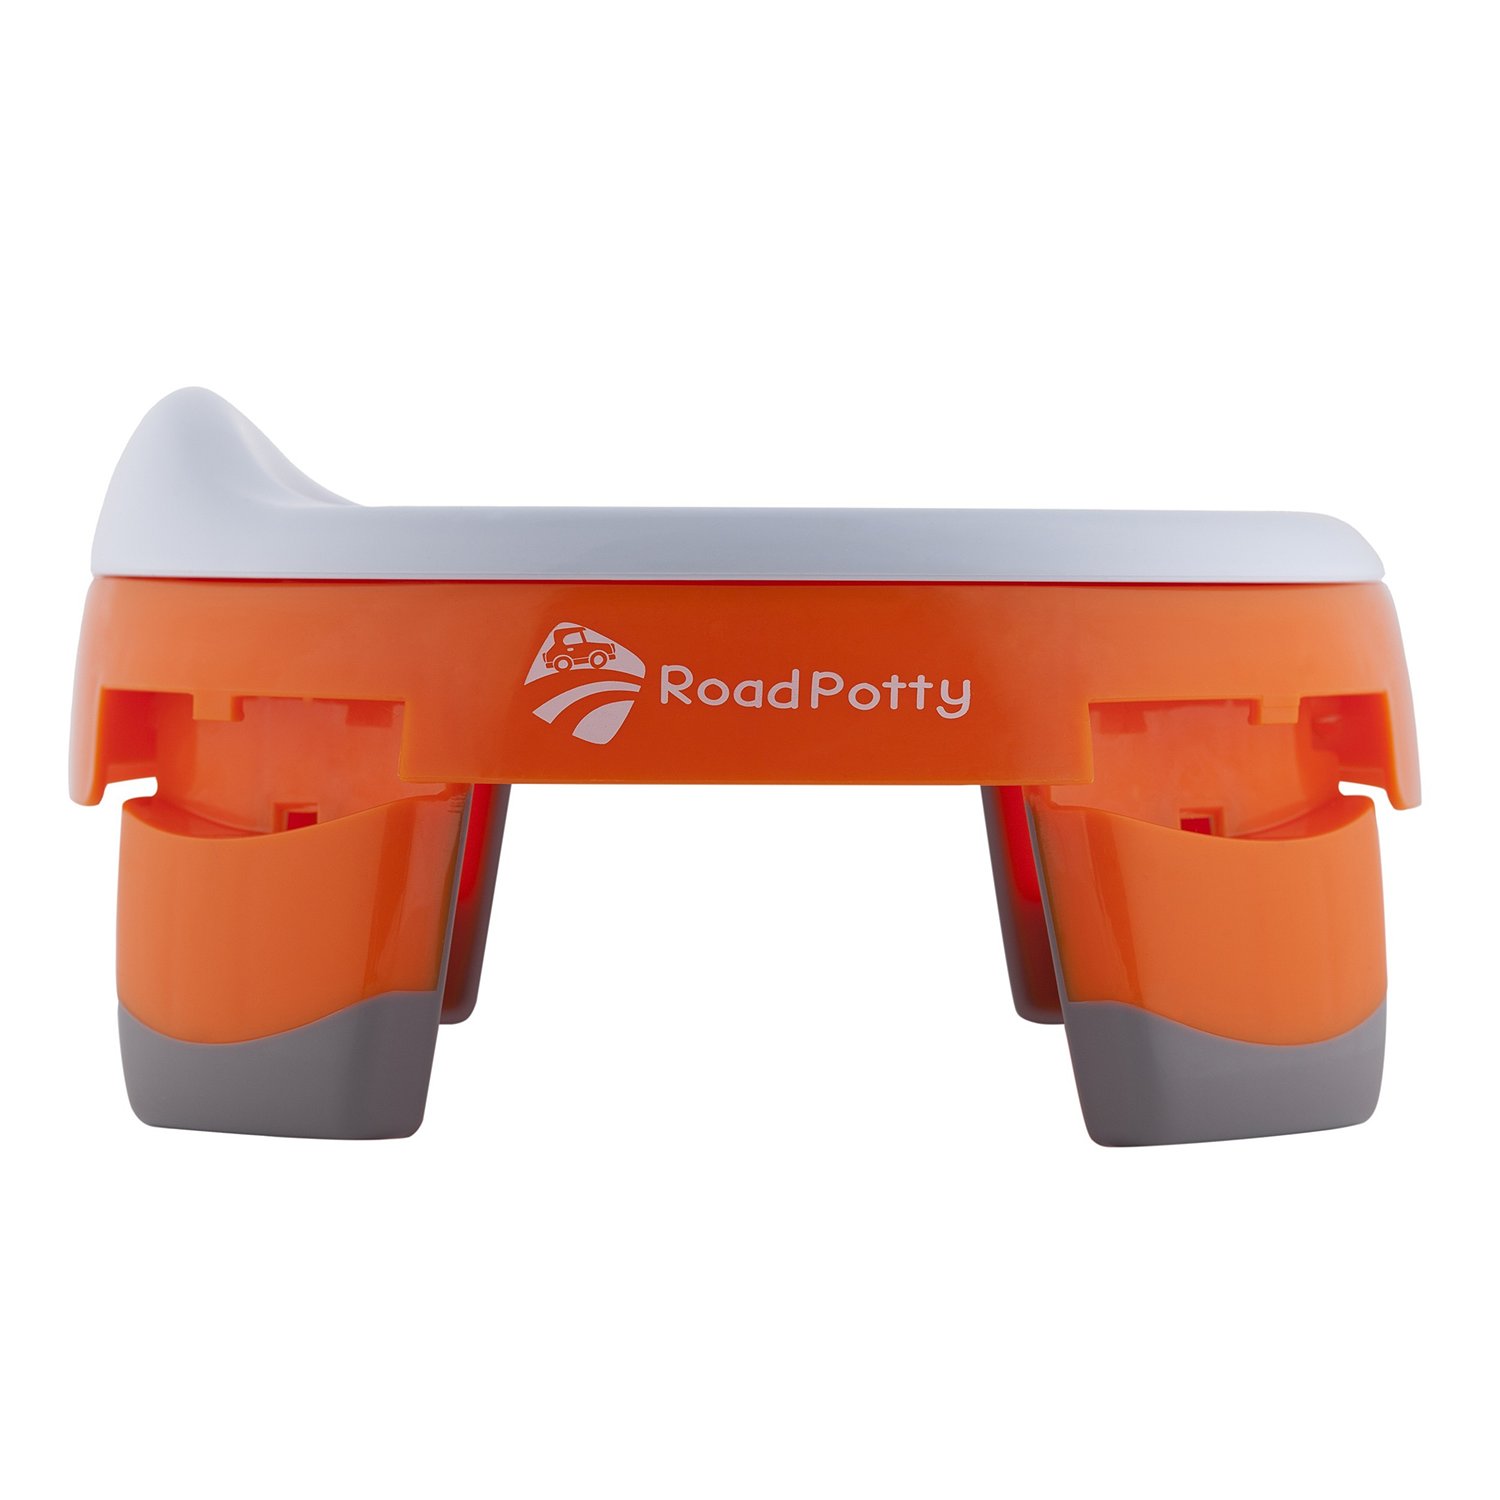 Горшок ROXY-KIDS RoadPotty дорожный Оранжевый HP-245R - фото 2